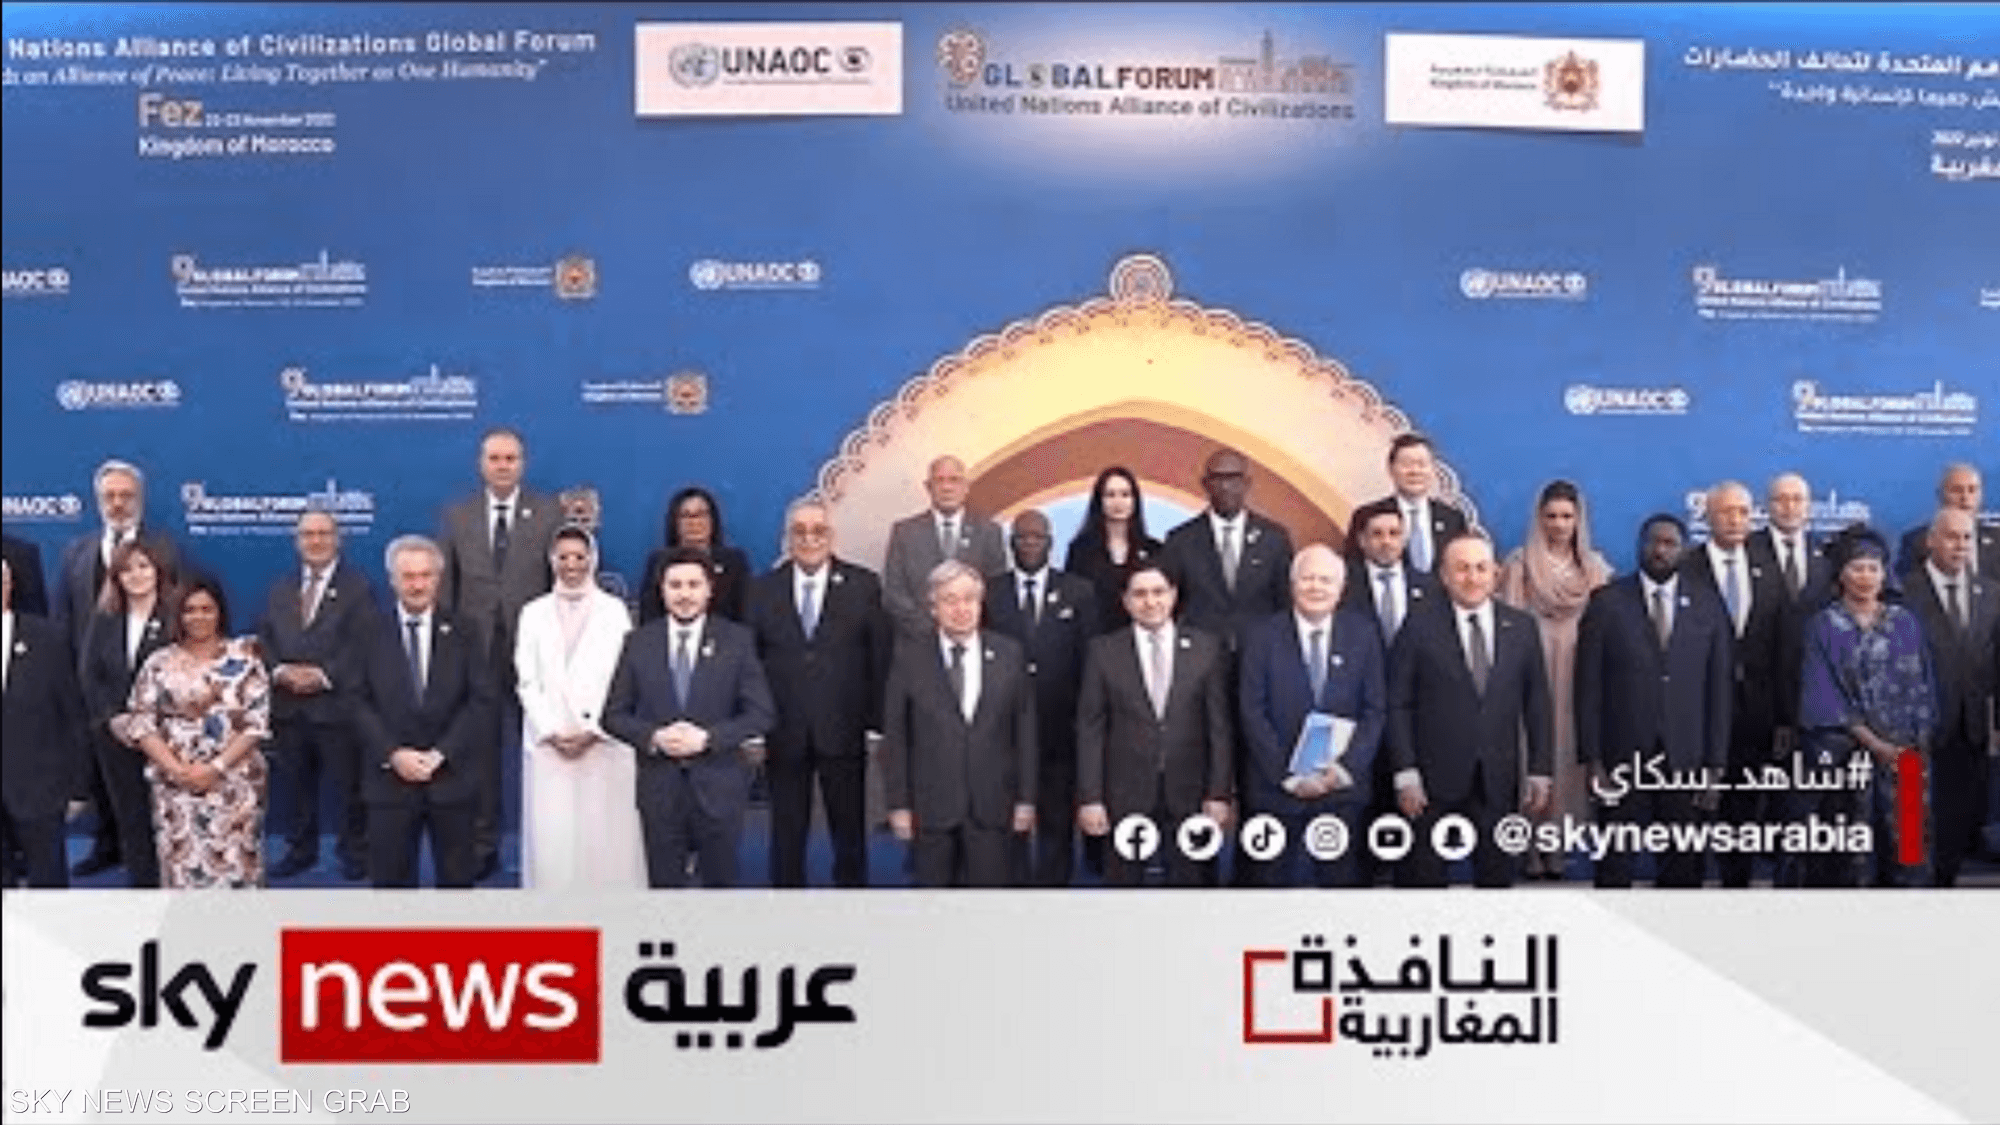 المنتدى العالمي لتحالف الحضارات ينطلق في المغرب